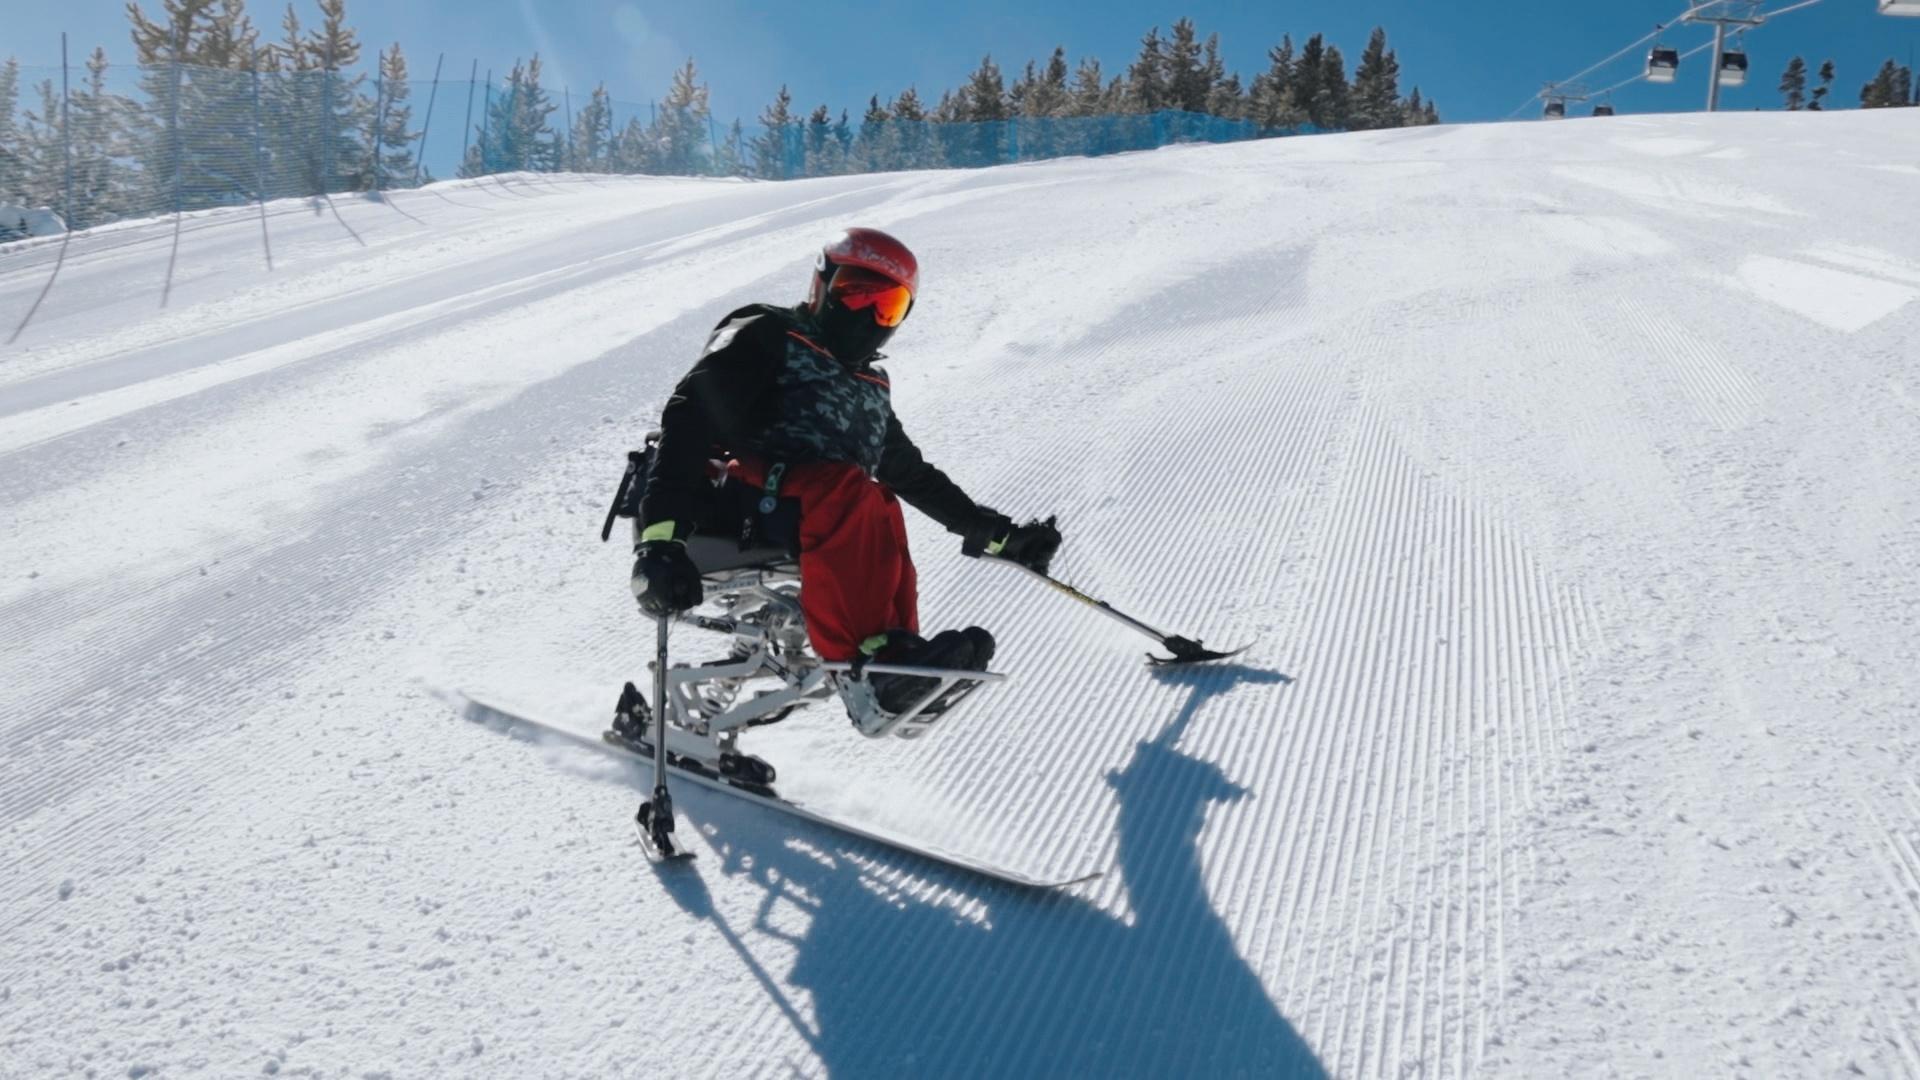 Paralympian Kyle Taulman practicing in Winter Park, Colorado